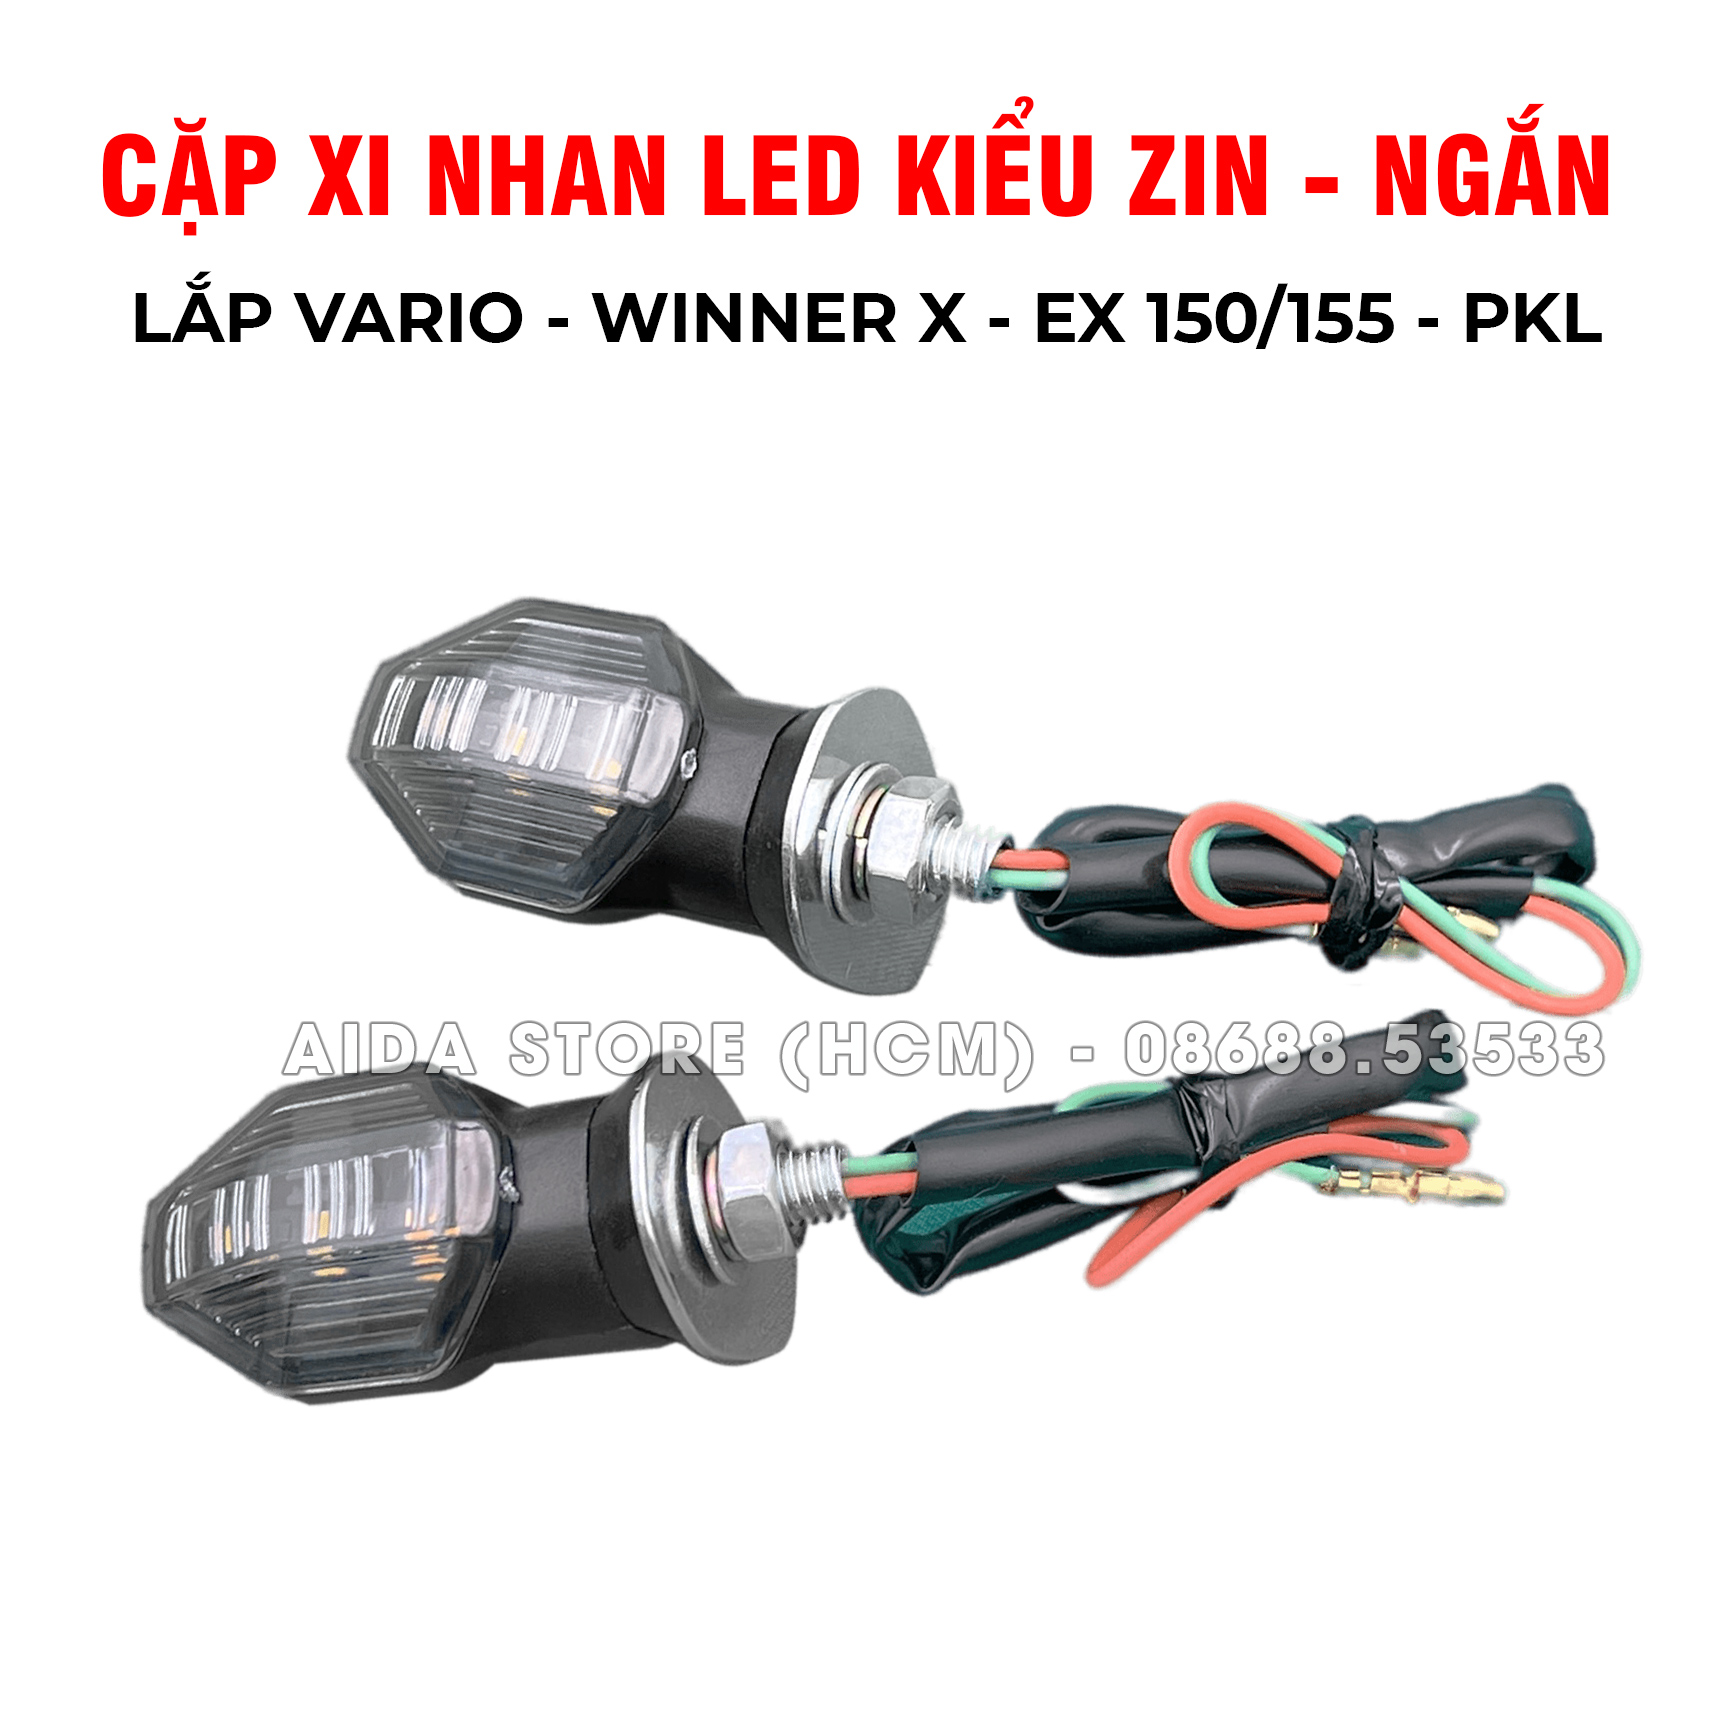 [XNK-N1] Cặp đèn LED xi nhan kiểu chính hãng cho Winner X, Exciter, Vario, PKL,..